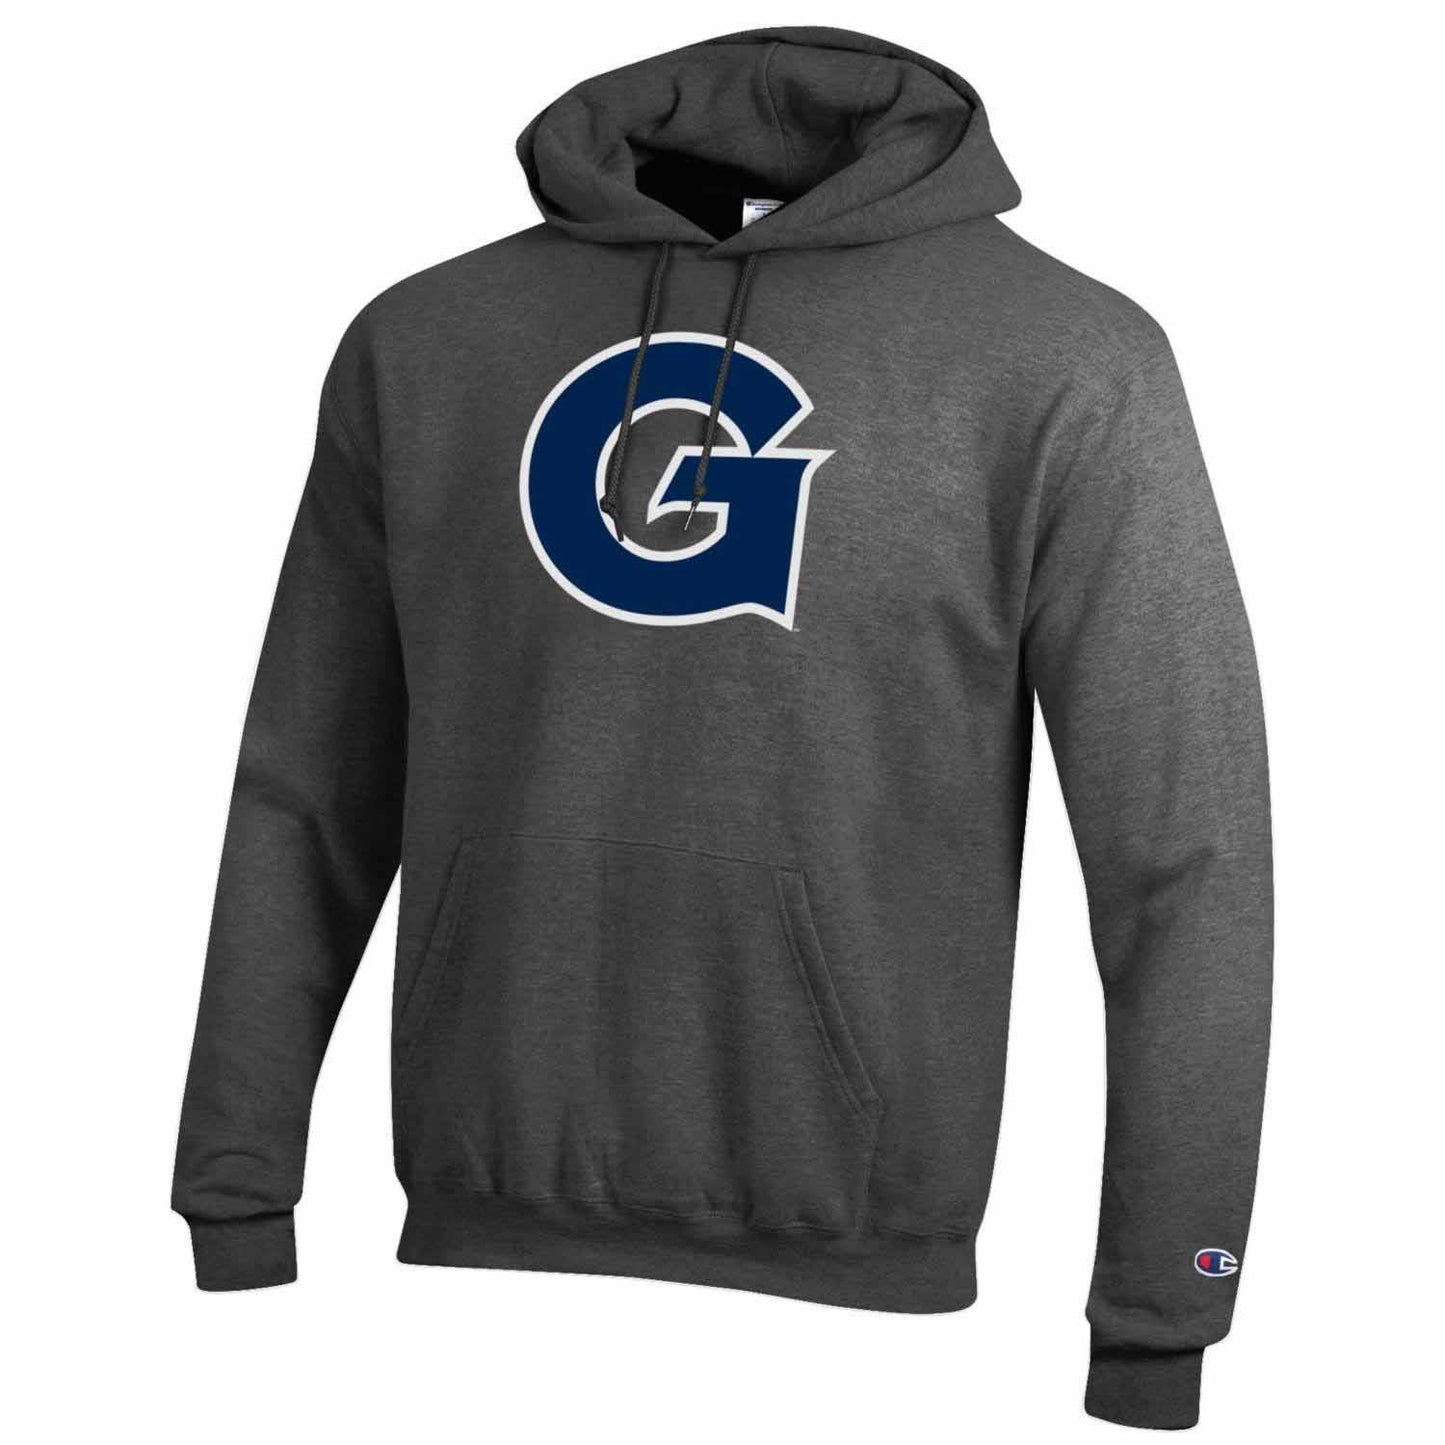 Georgetown Hoyas Adult Mascot Fleece Hooded Sweatshirt - Charcoal